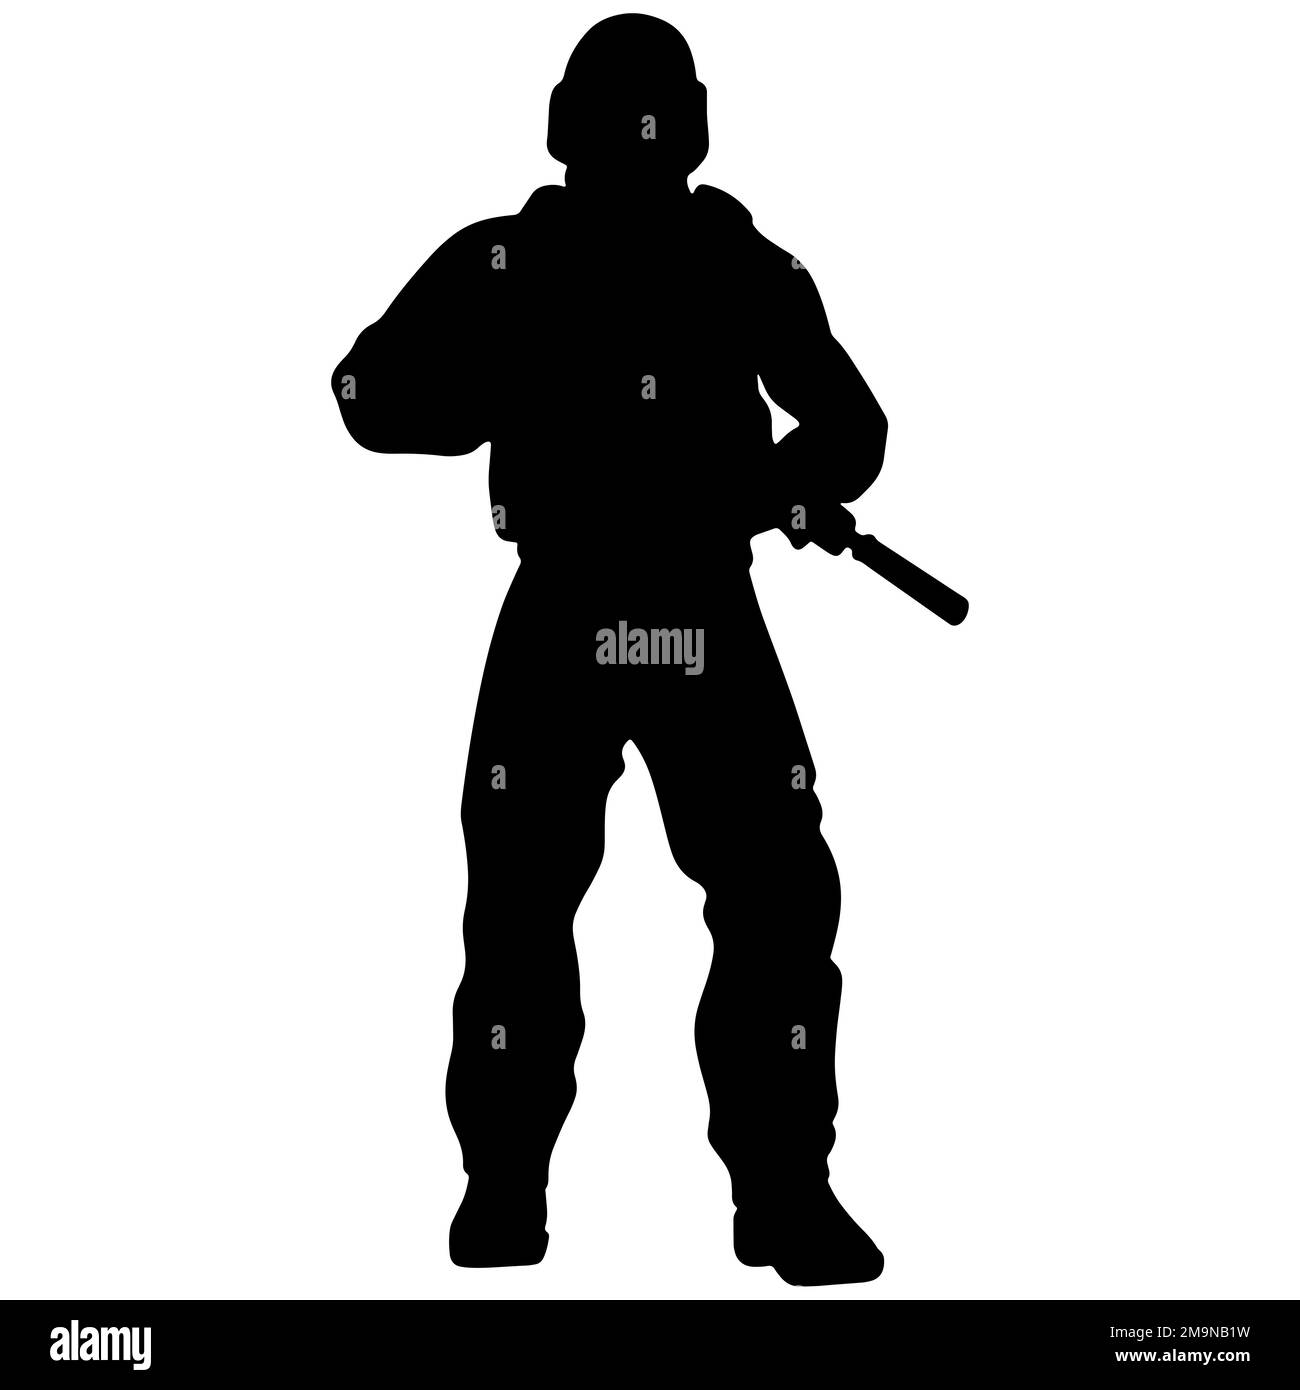 Silhouette bianca e nera di un soldato con un'arma. Un soldato delle forze speciali punta e spara un fucile o una mitragliatrice contro il nemico Foto Stock